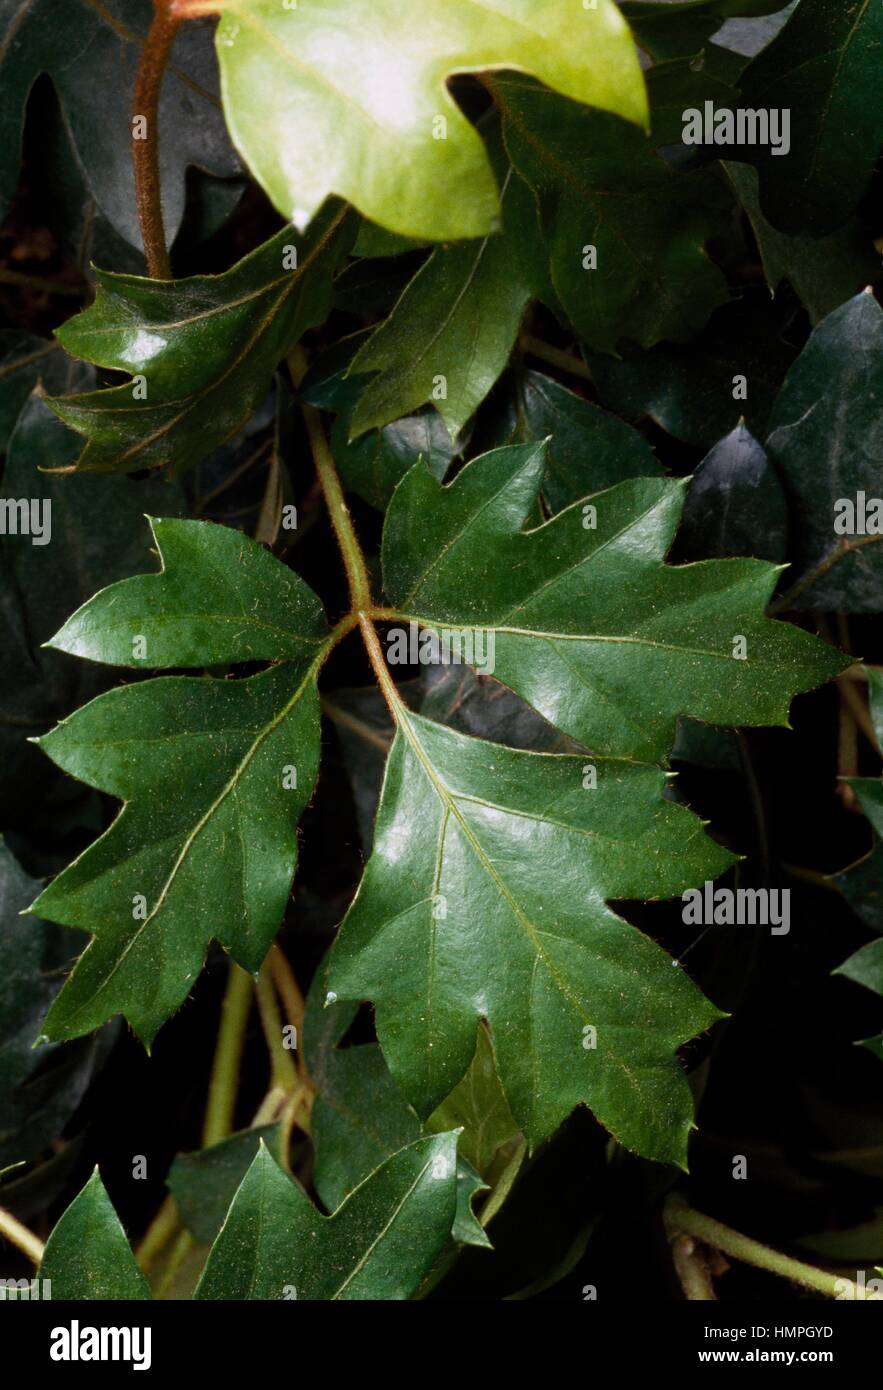 Grape-ivy (Cissus rhombifolia), Vitaceae. Stock Photo